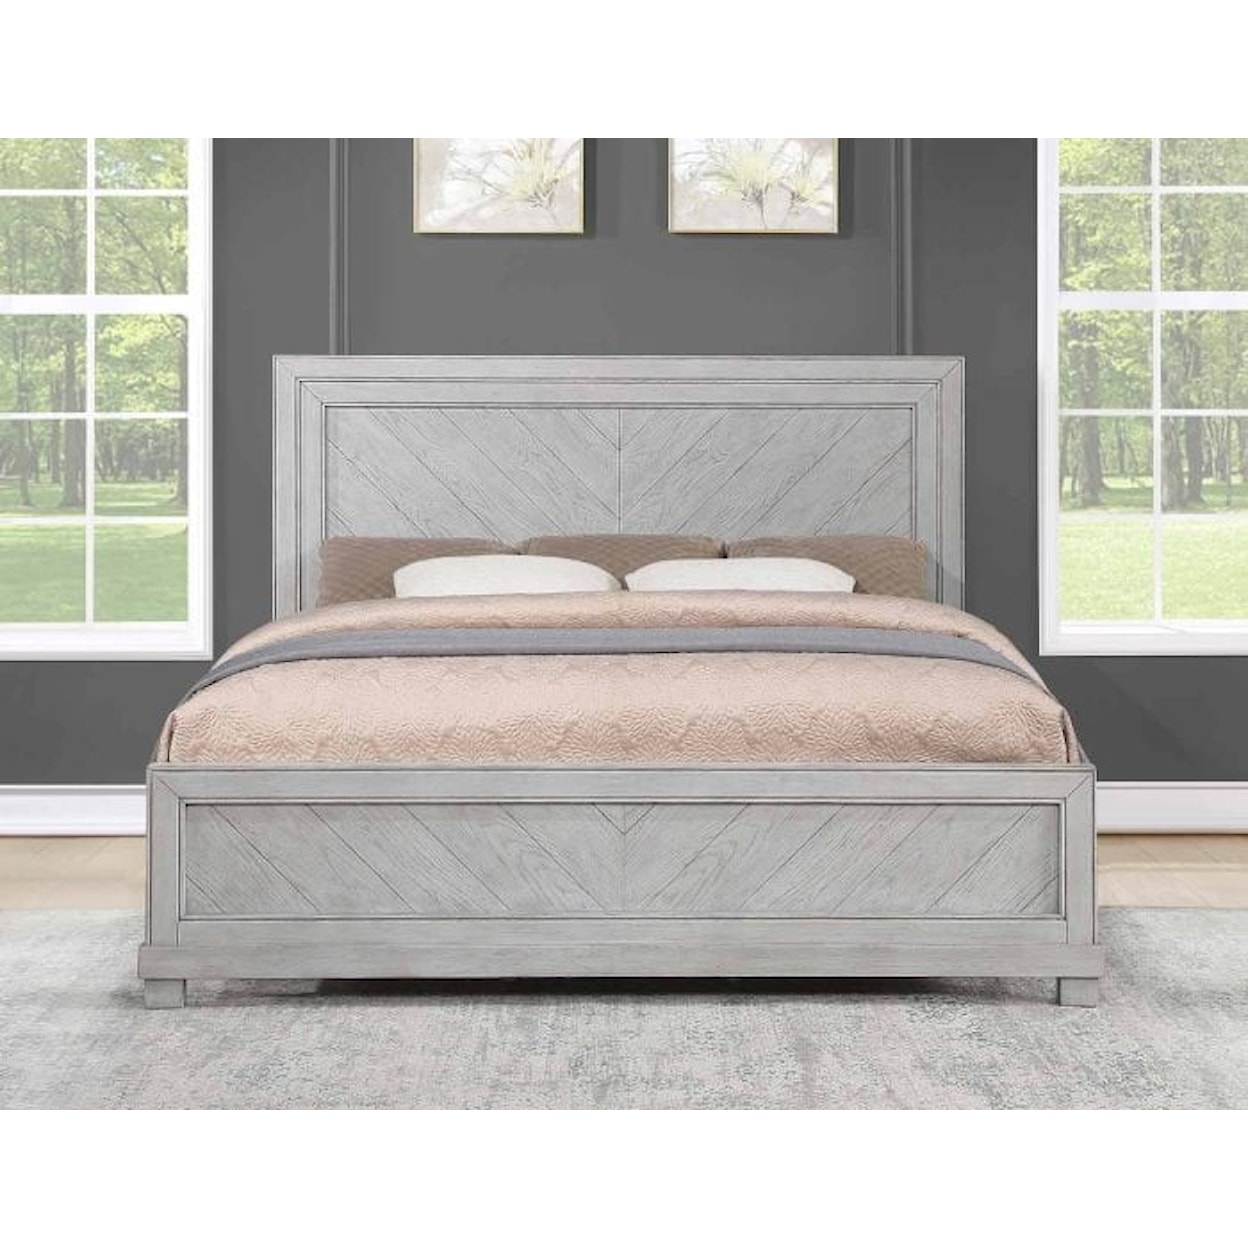 Prime Montana Queen Bed